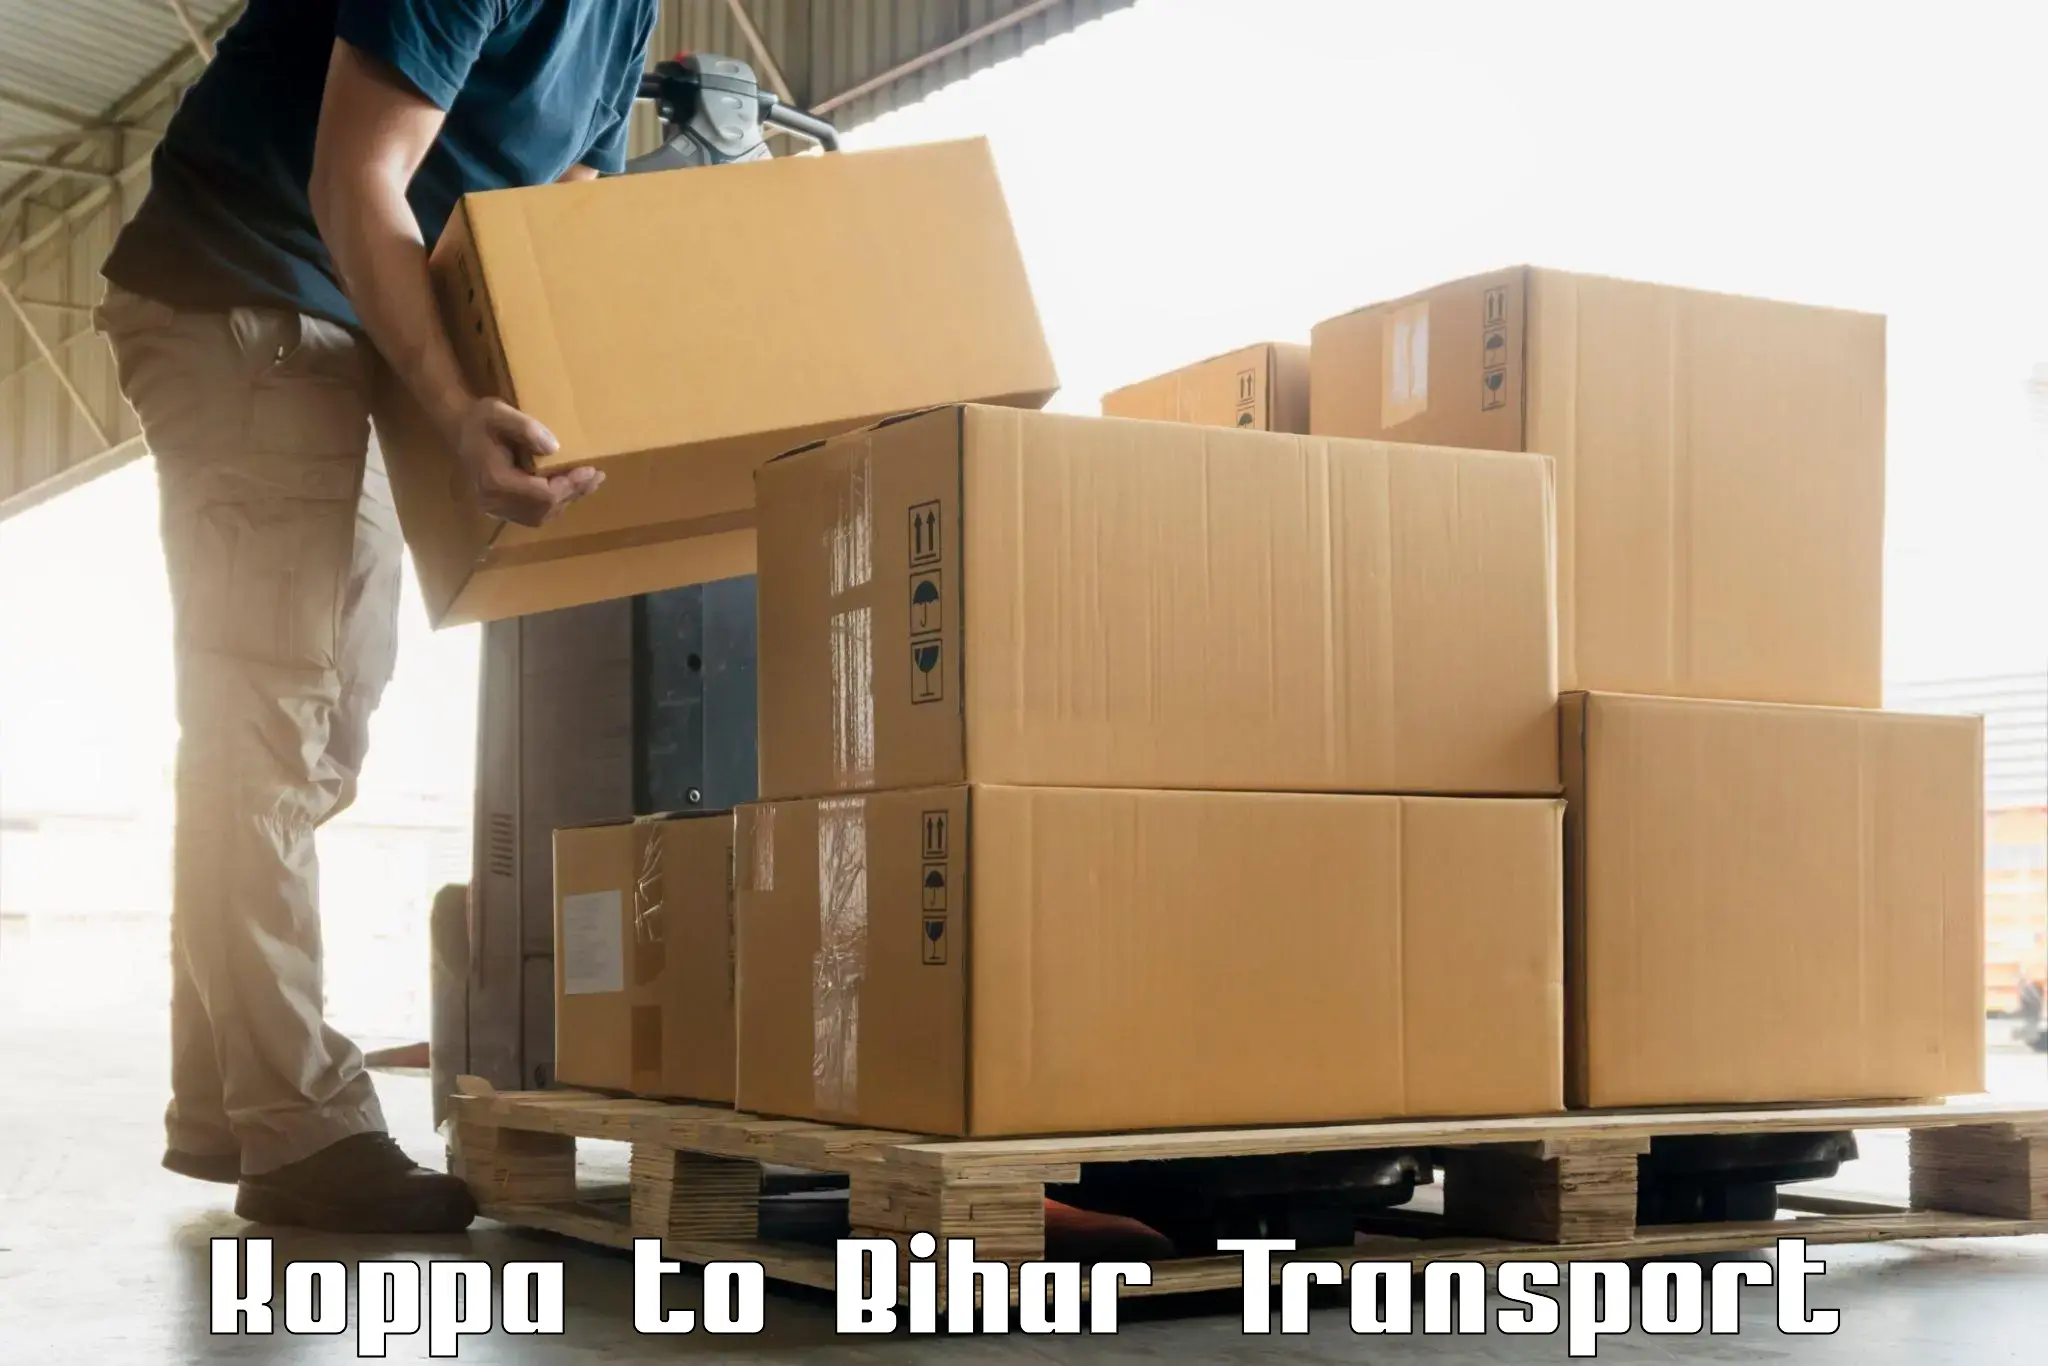 Express transport services in Koppa to Dehri